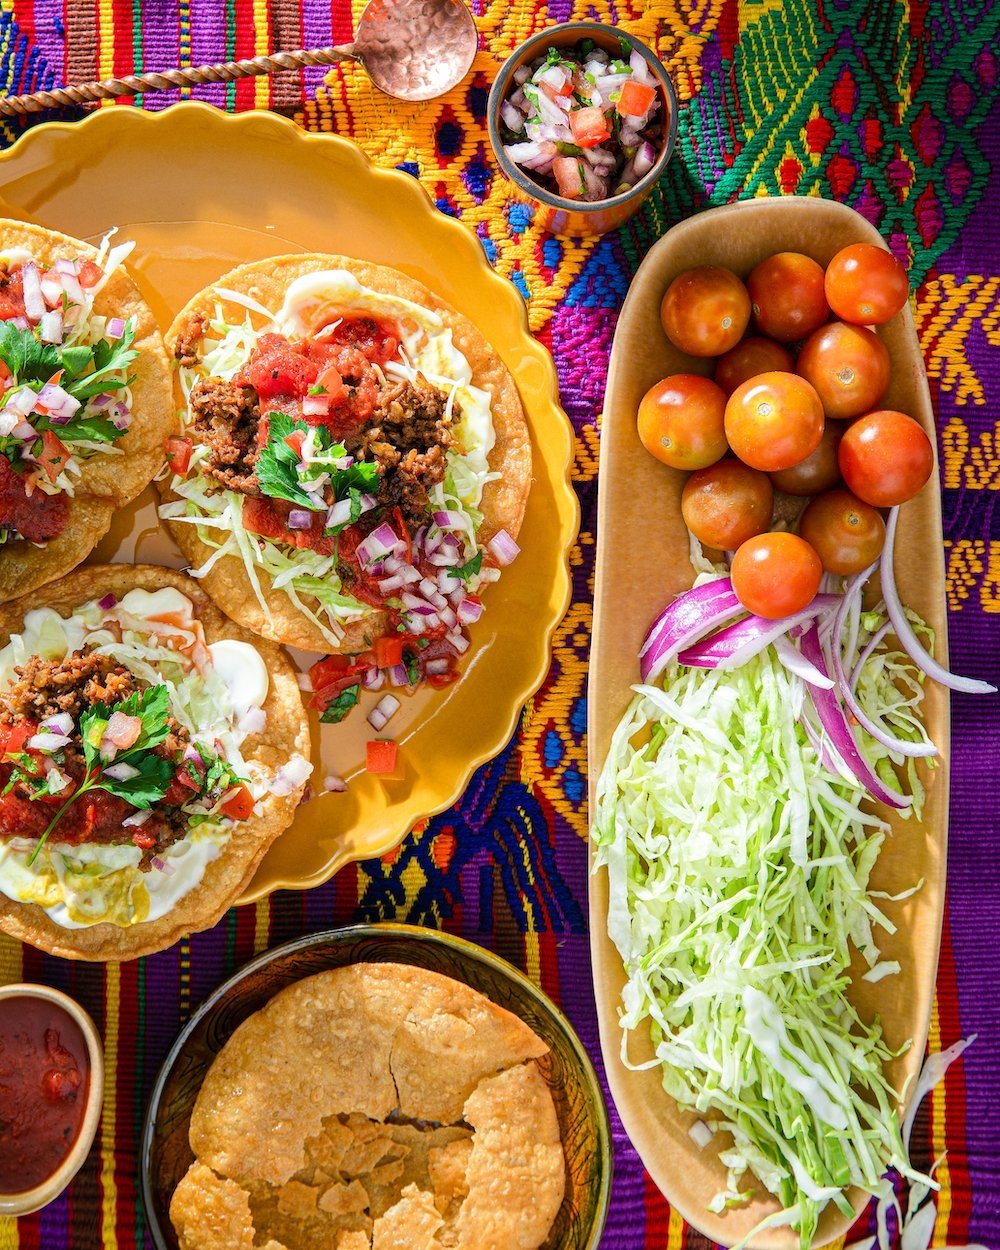 Thú vị và đặc sắc, ẩm thực Guatemala đem đến cho bạn trải nghiệm mới lạ về ẩm thực Trung Mỹ. Với những món ăn mang hương vị đặc trưng và phong phú của đất nước này, hình ảnh ẩm thực Guatemala sẽ cho bạn động lực để khám phá những hương vị mới lạ.